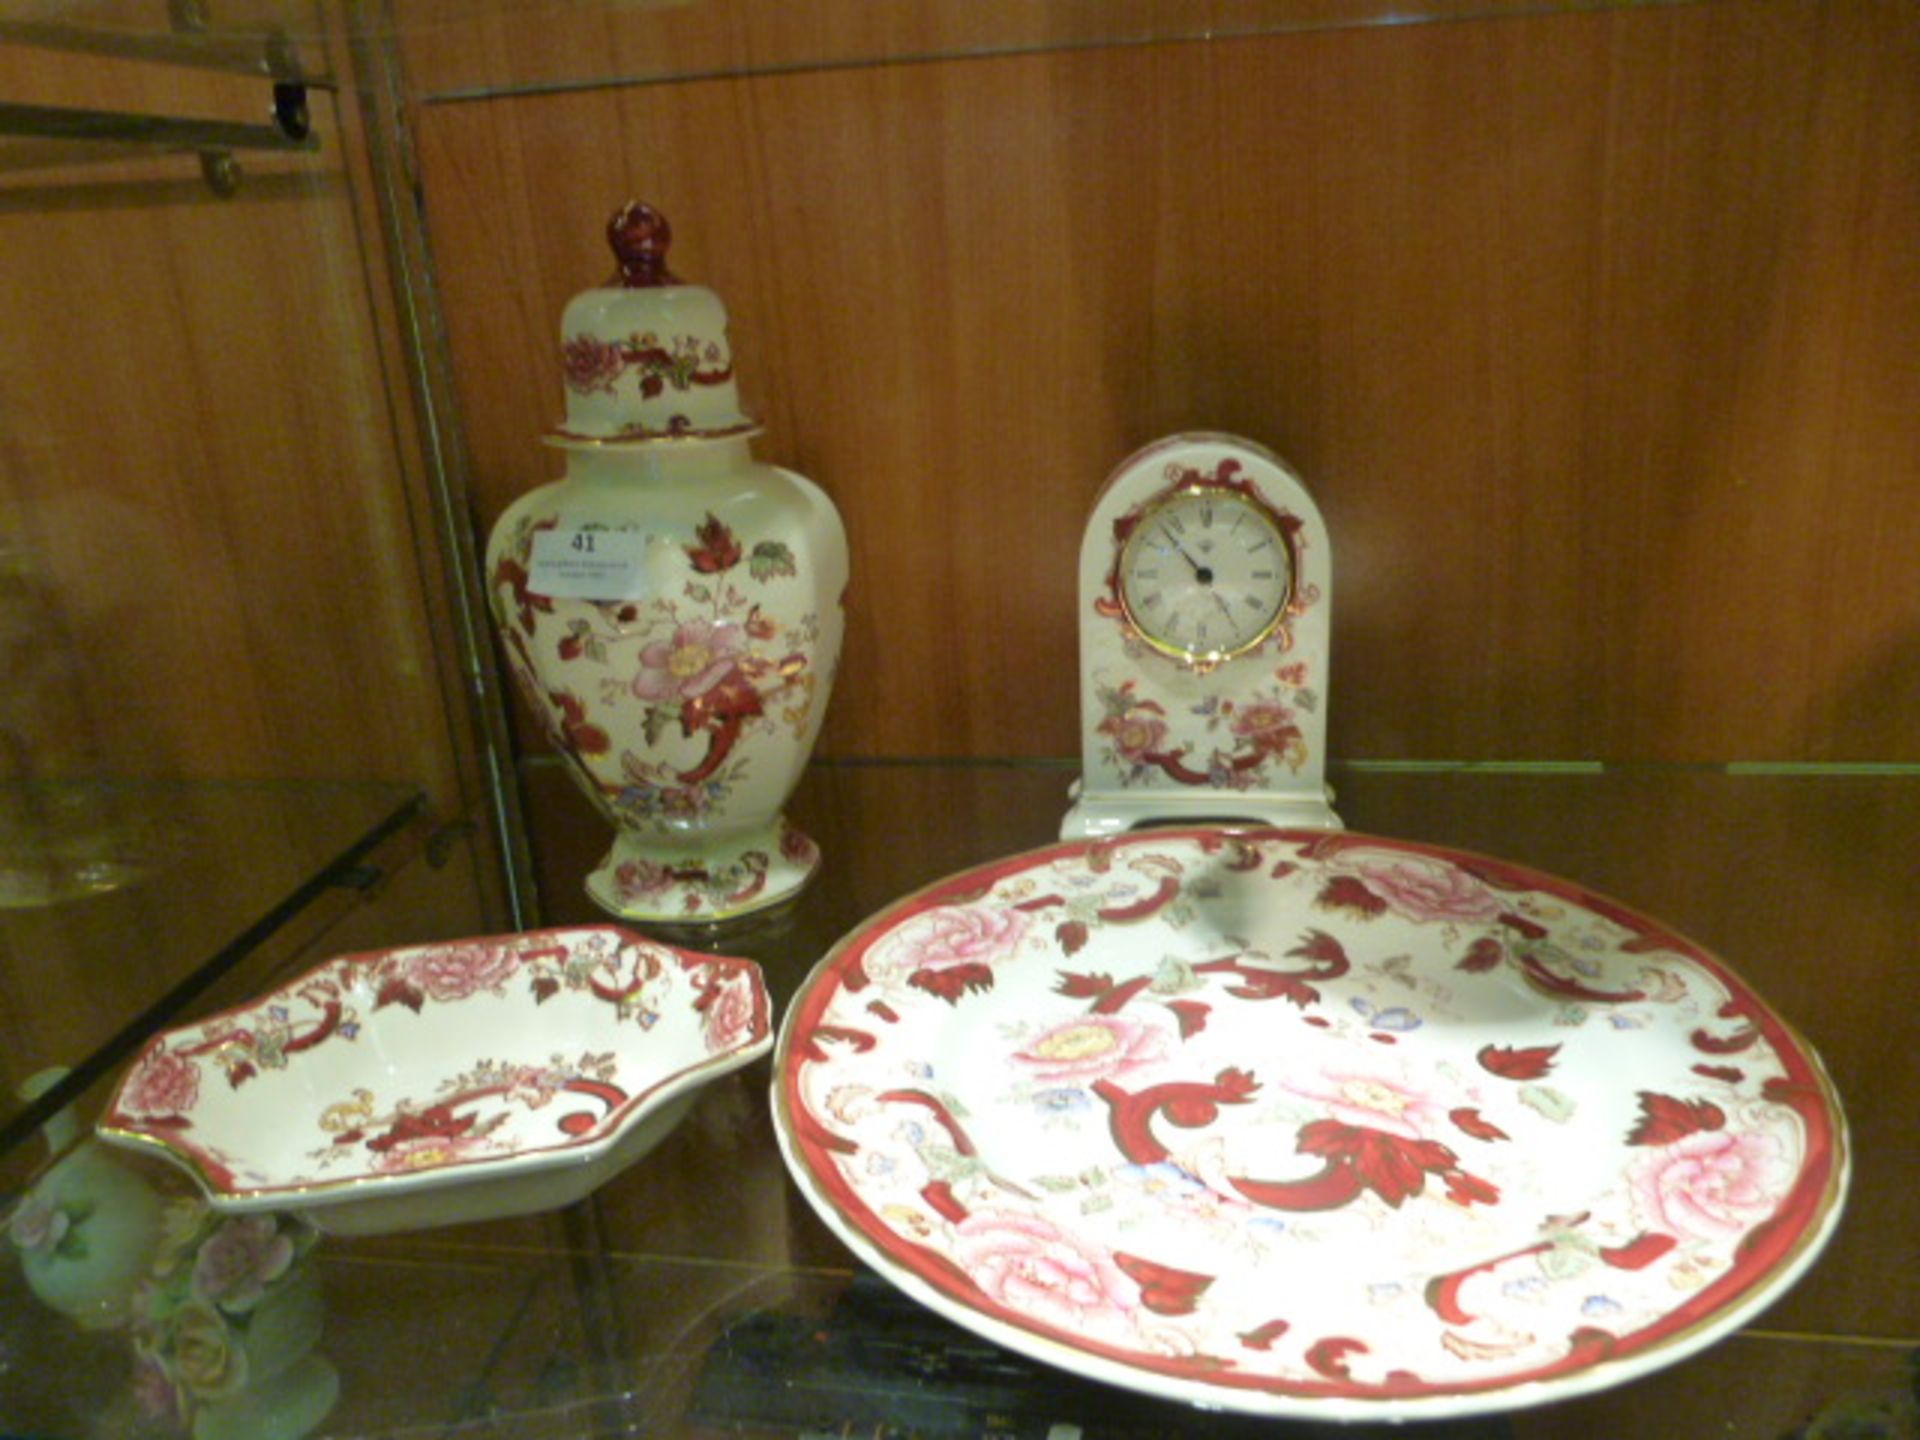 Masons Red Mandalay Clock, Plate, Dish and Vase